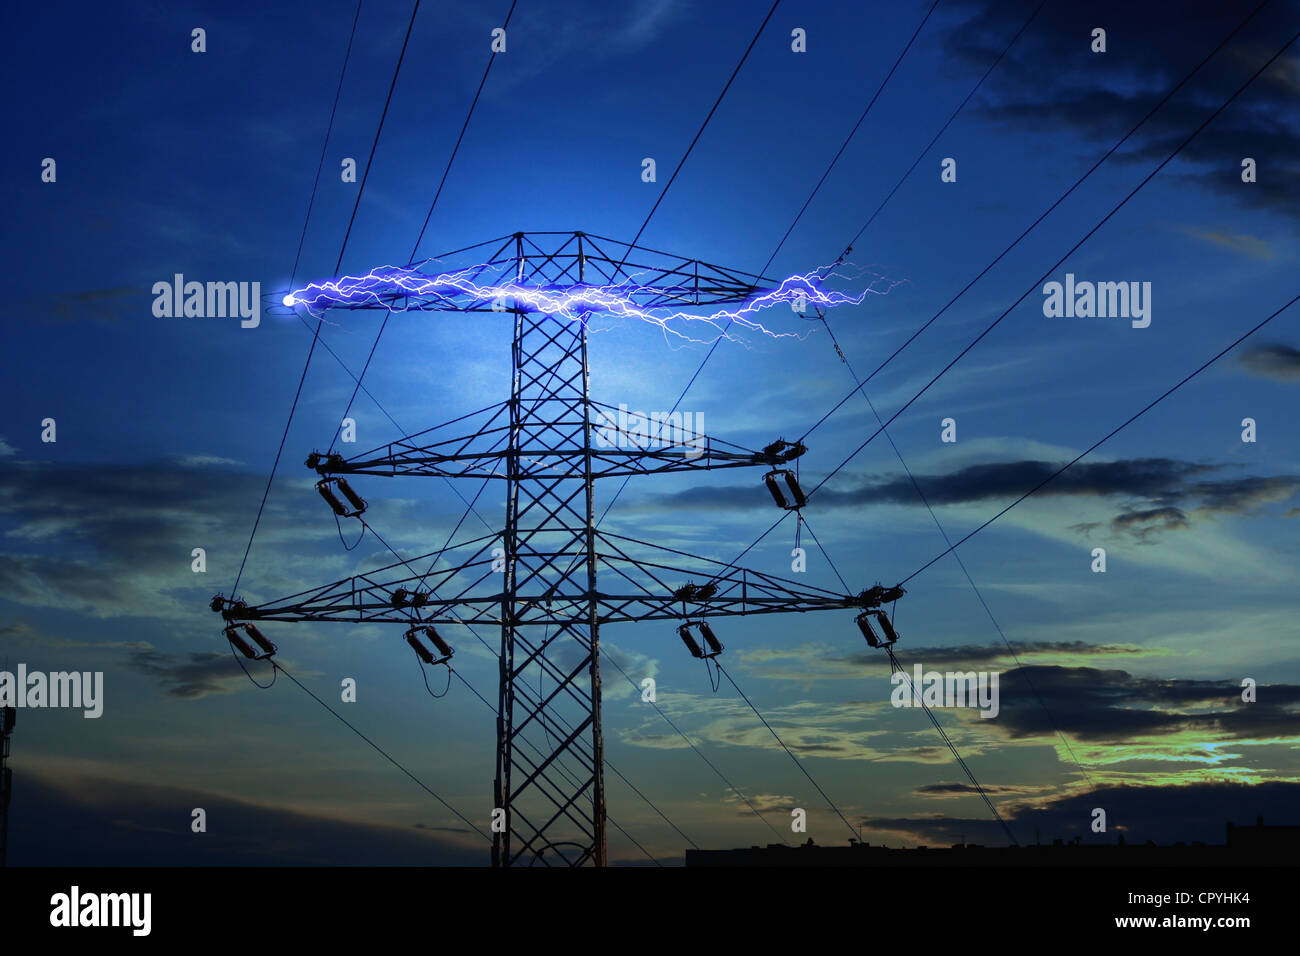 Concepto de electricidad con el rayo en la noche Foto de stock